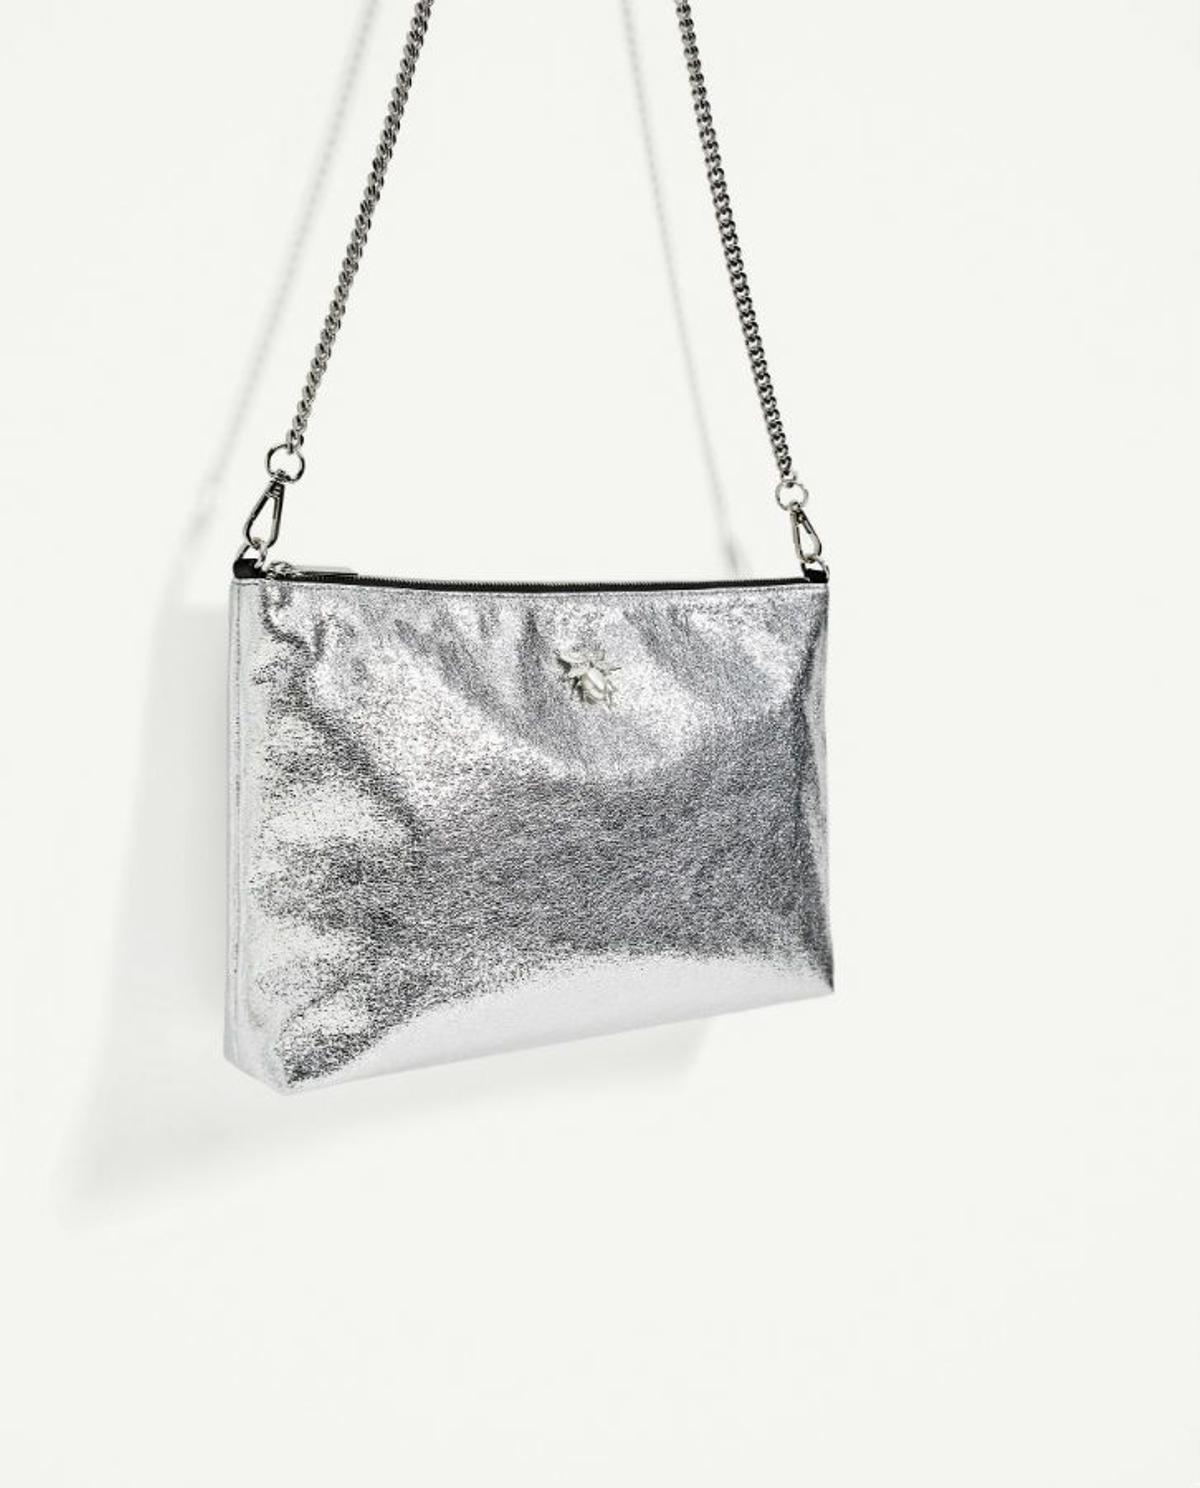 Prendas metalizadas para el verano: bolso de Zara